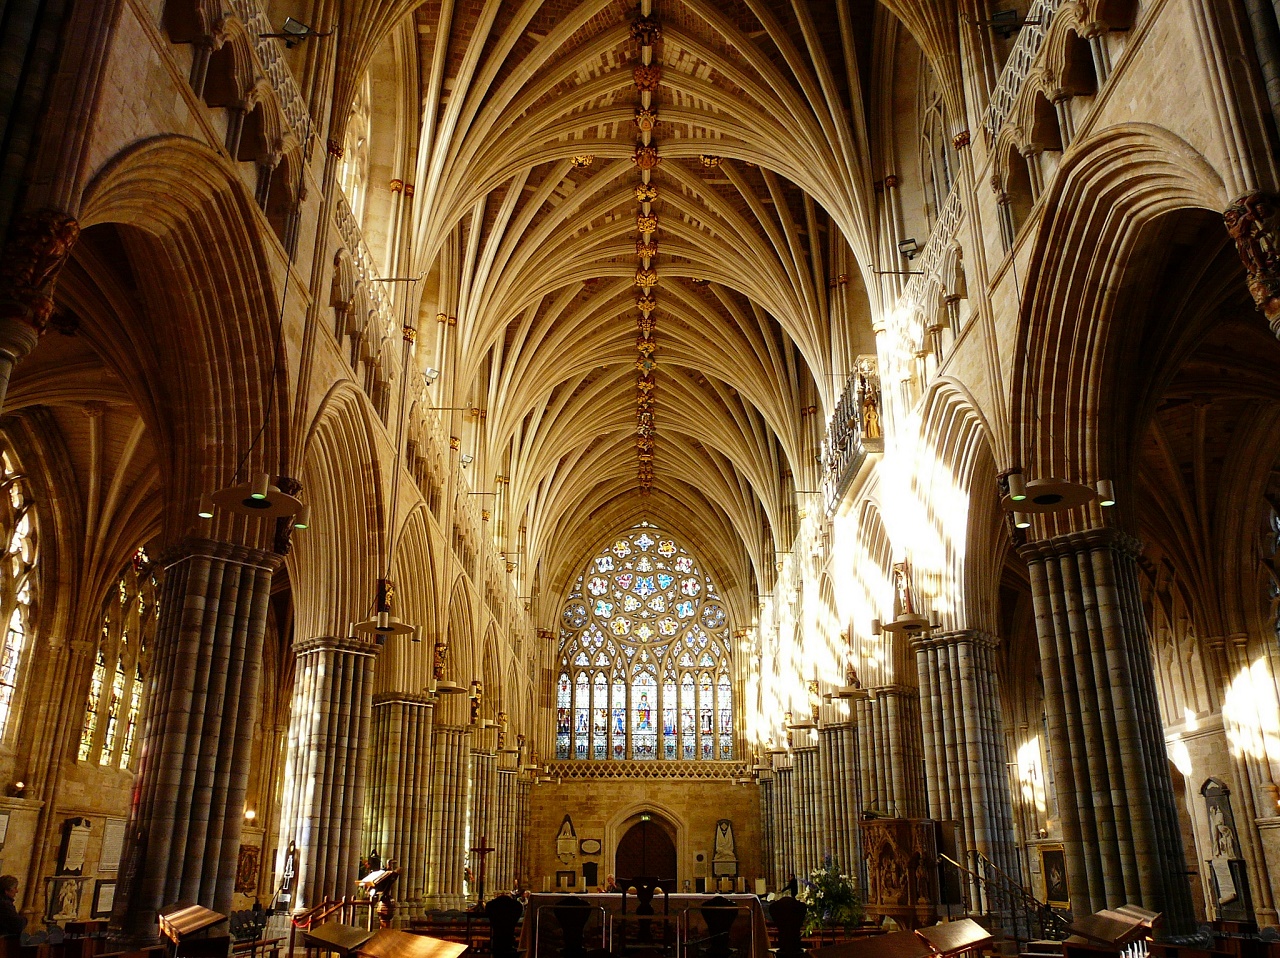 Exeter Cathedral. Credit: Javi / Flickr